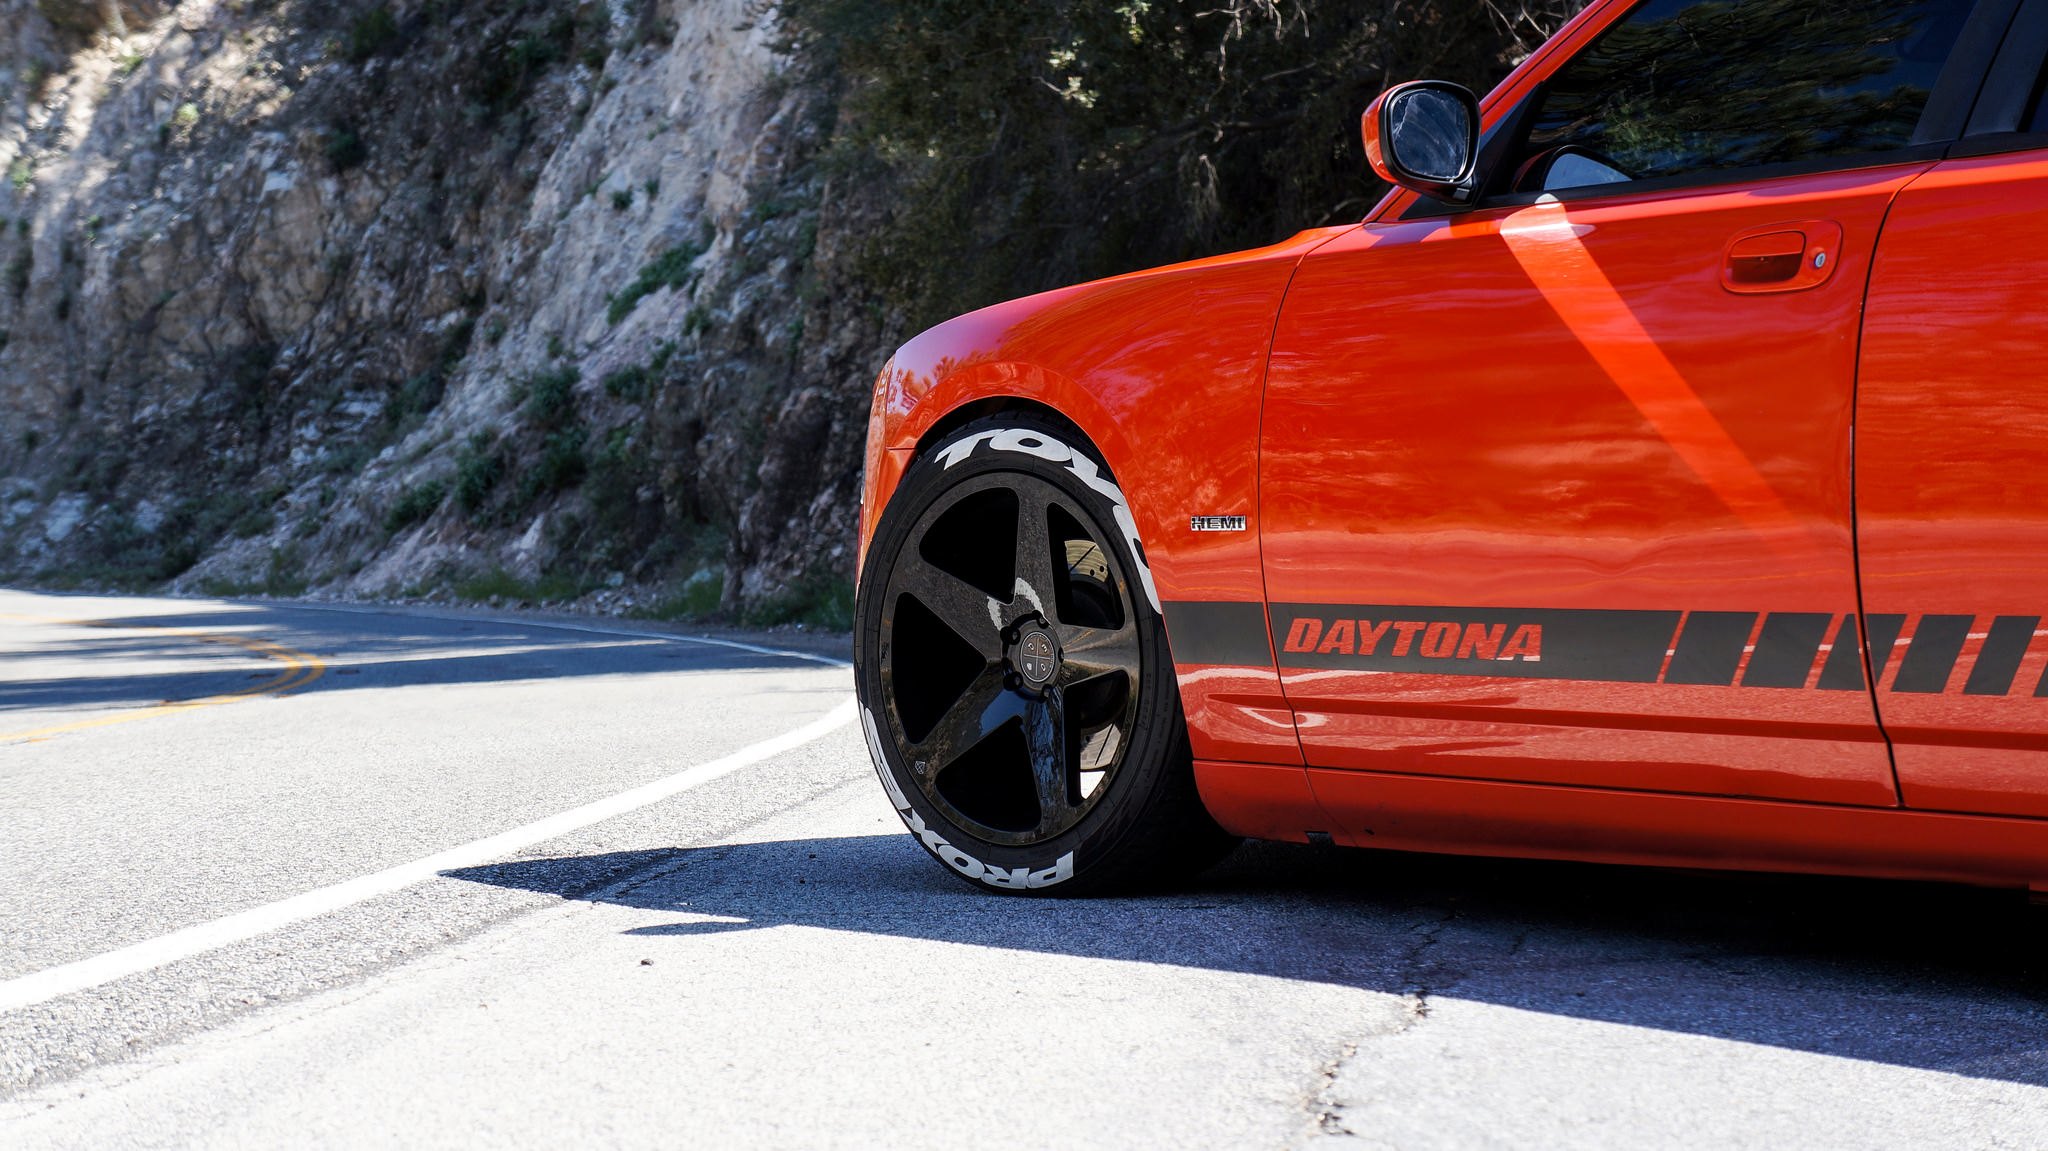 Orange Dodge Charger RT with Blaque Diamond Wheels - Photo by Blaque Diamond Wheels